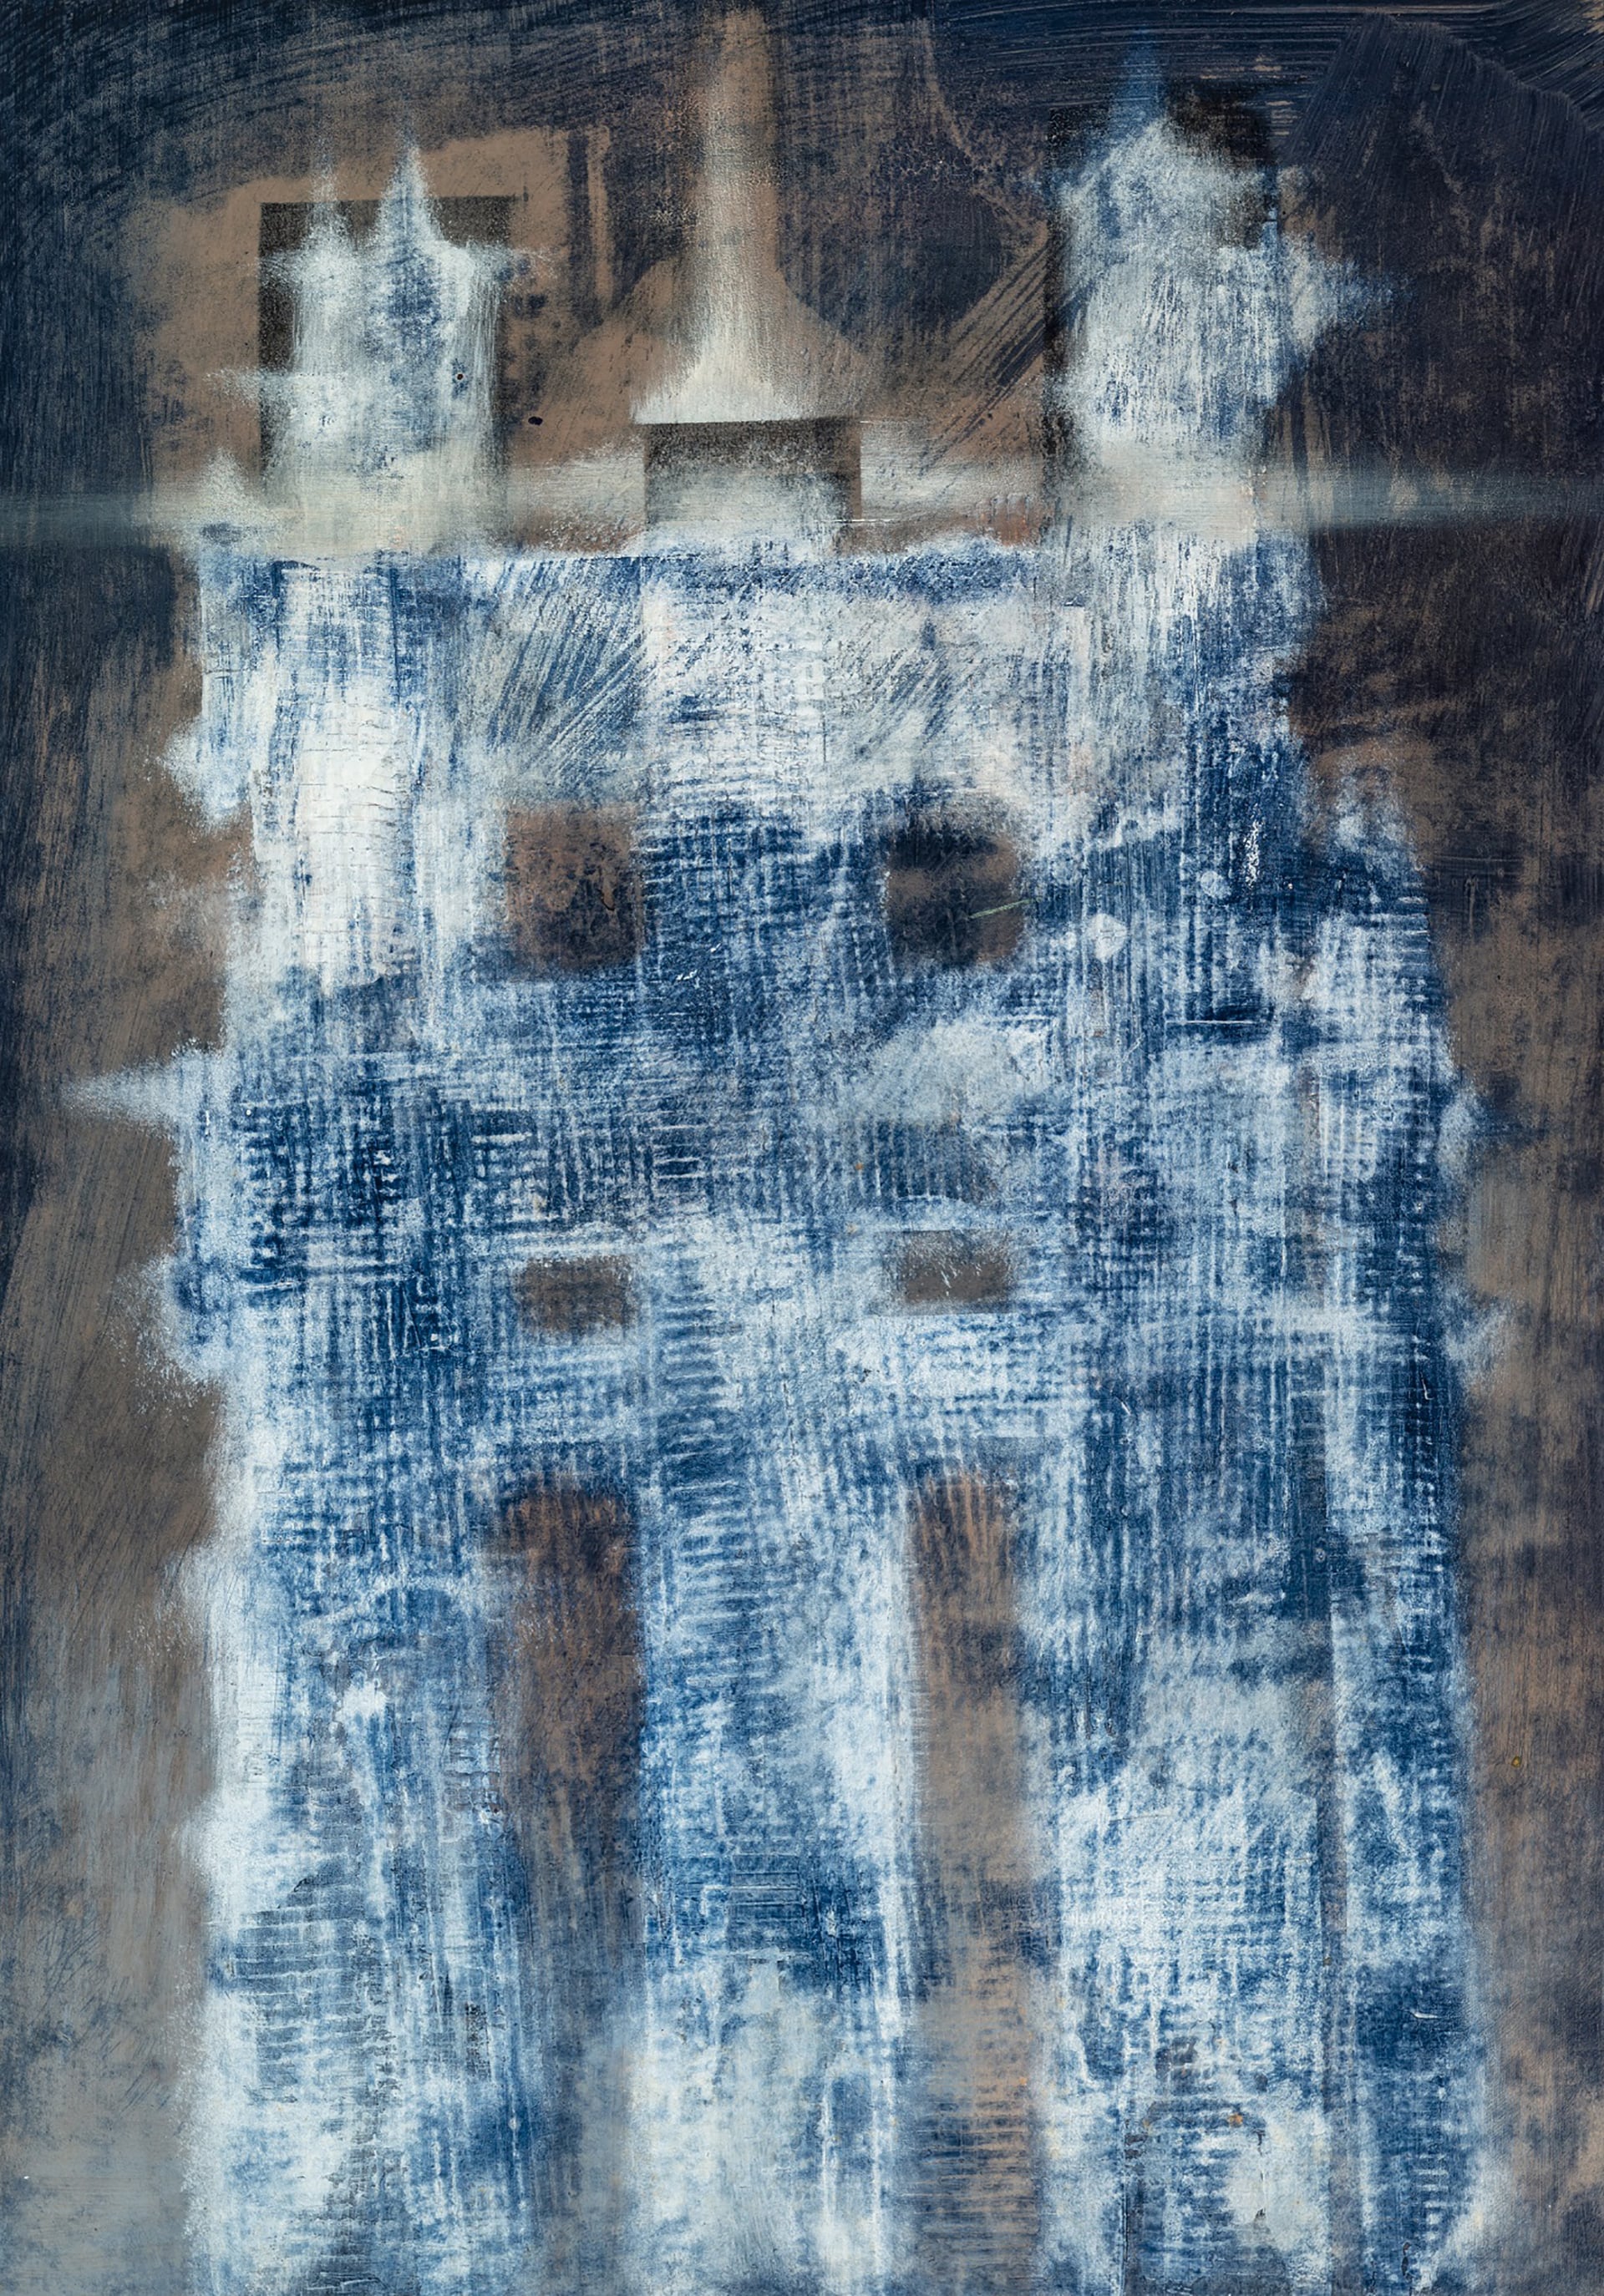 Luigi Pericle, "Senza titolo", senza data. Tecnica mista su masonite, 42 x 30 cm. Collezione privata